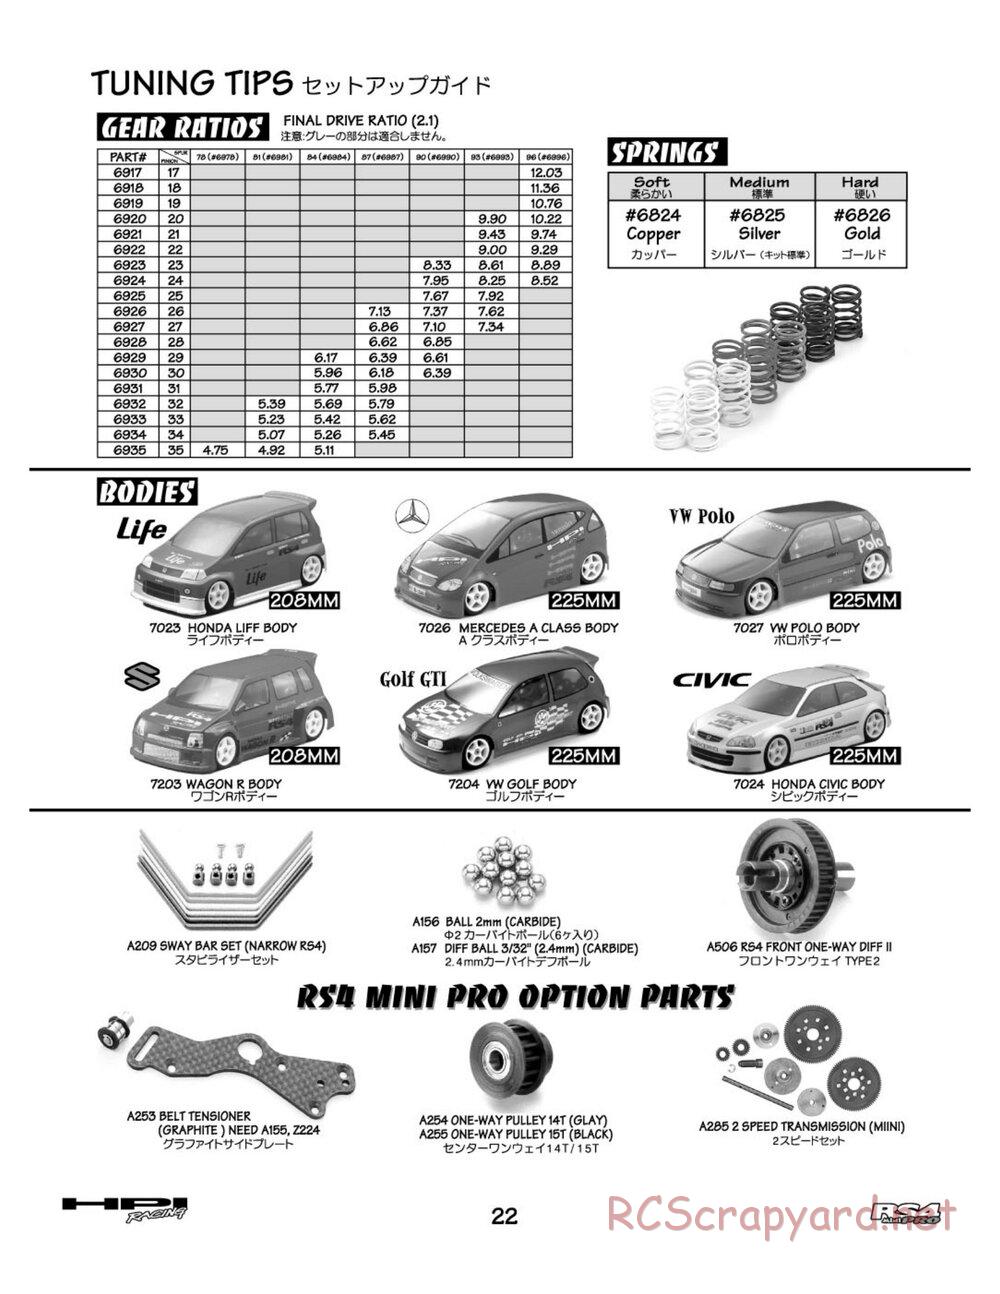 HPI - RS4 Mini Pro - Manual - Page 22